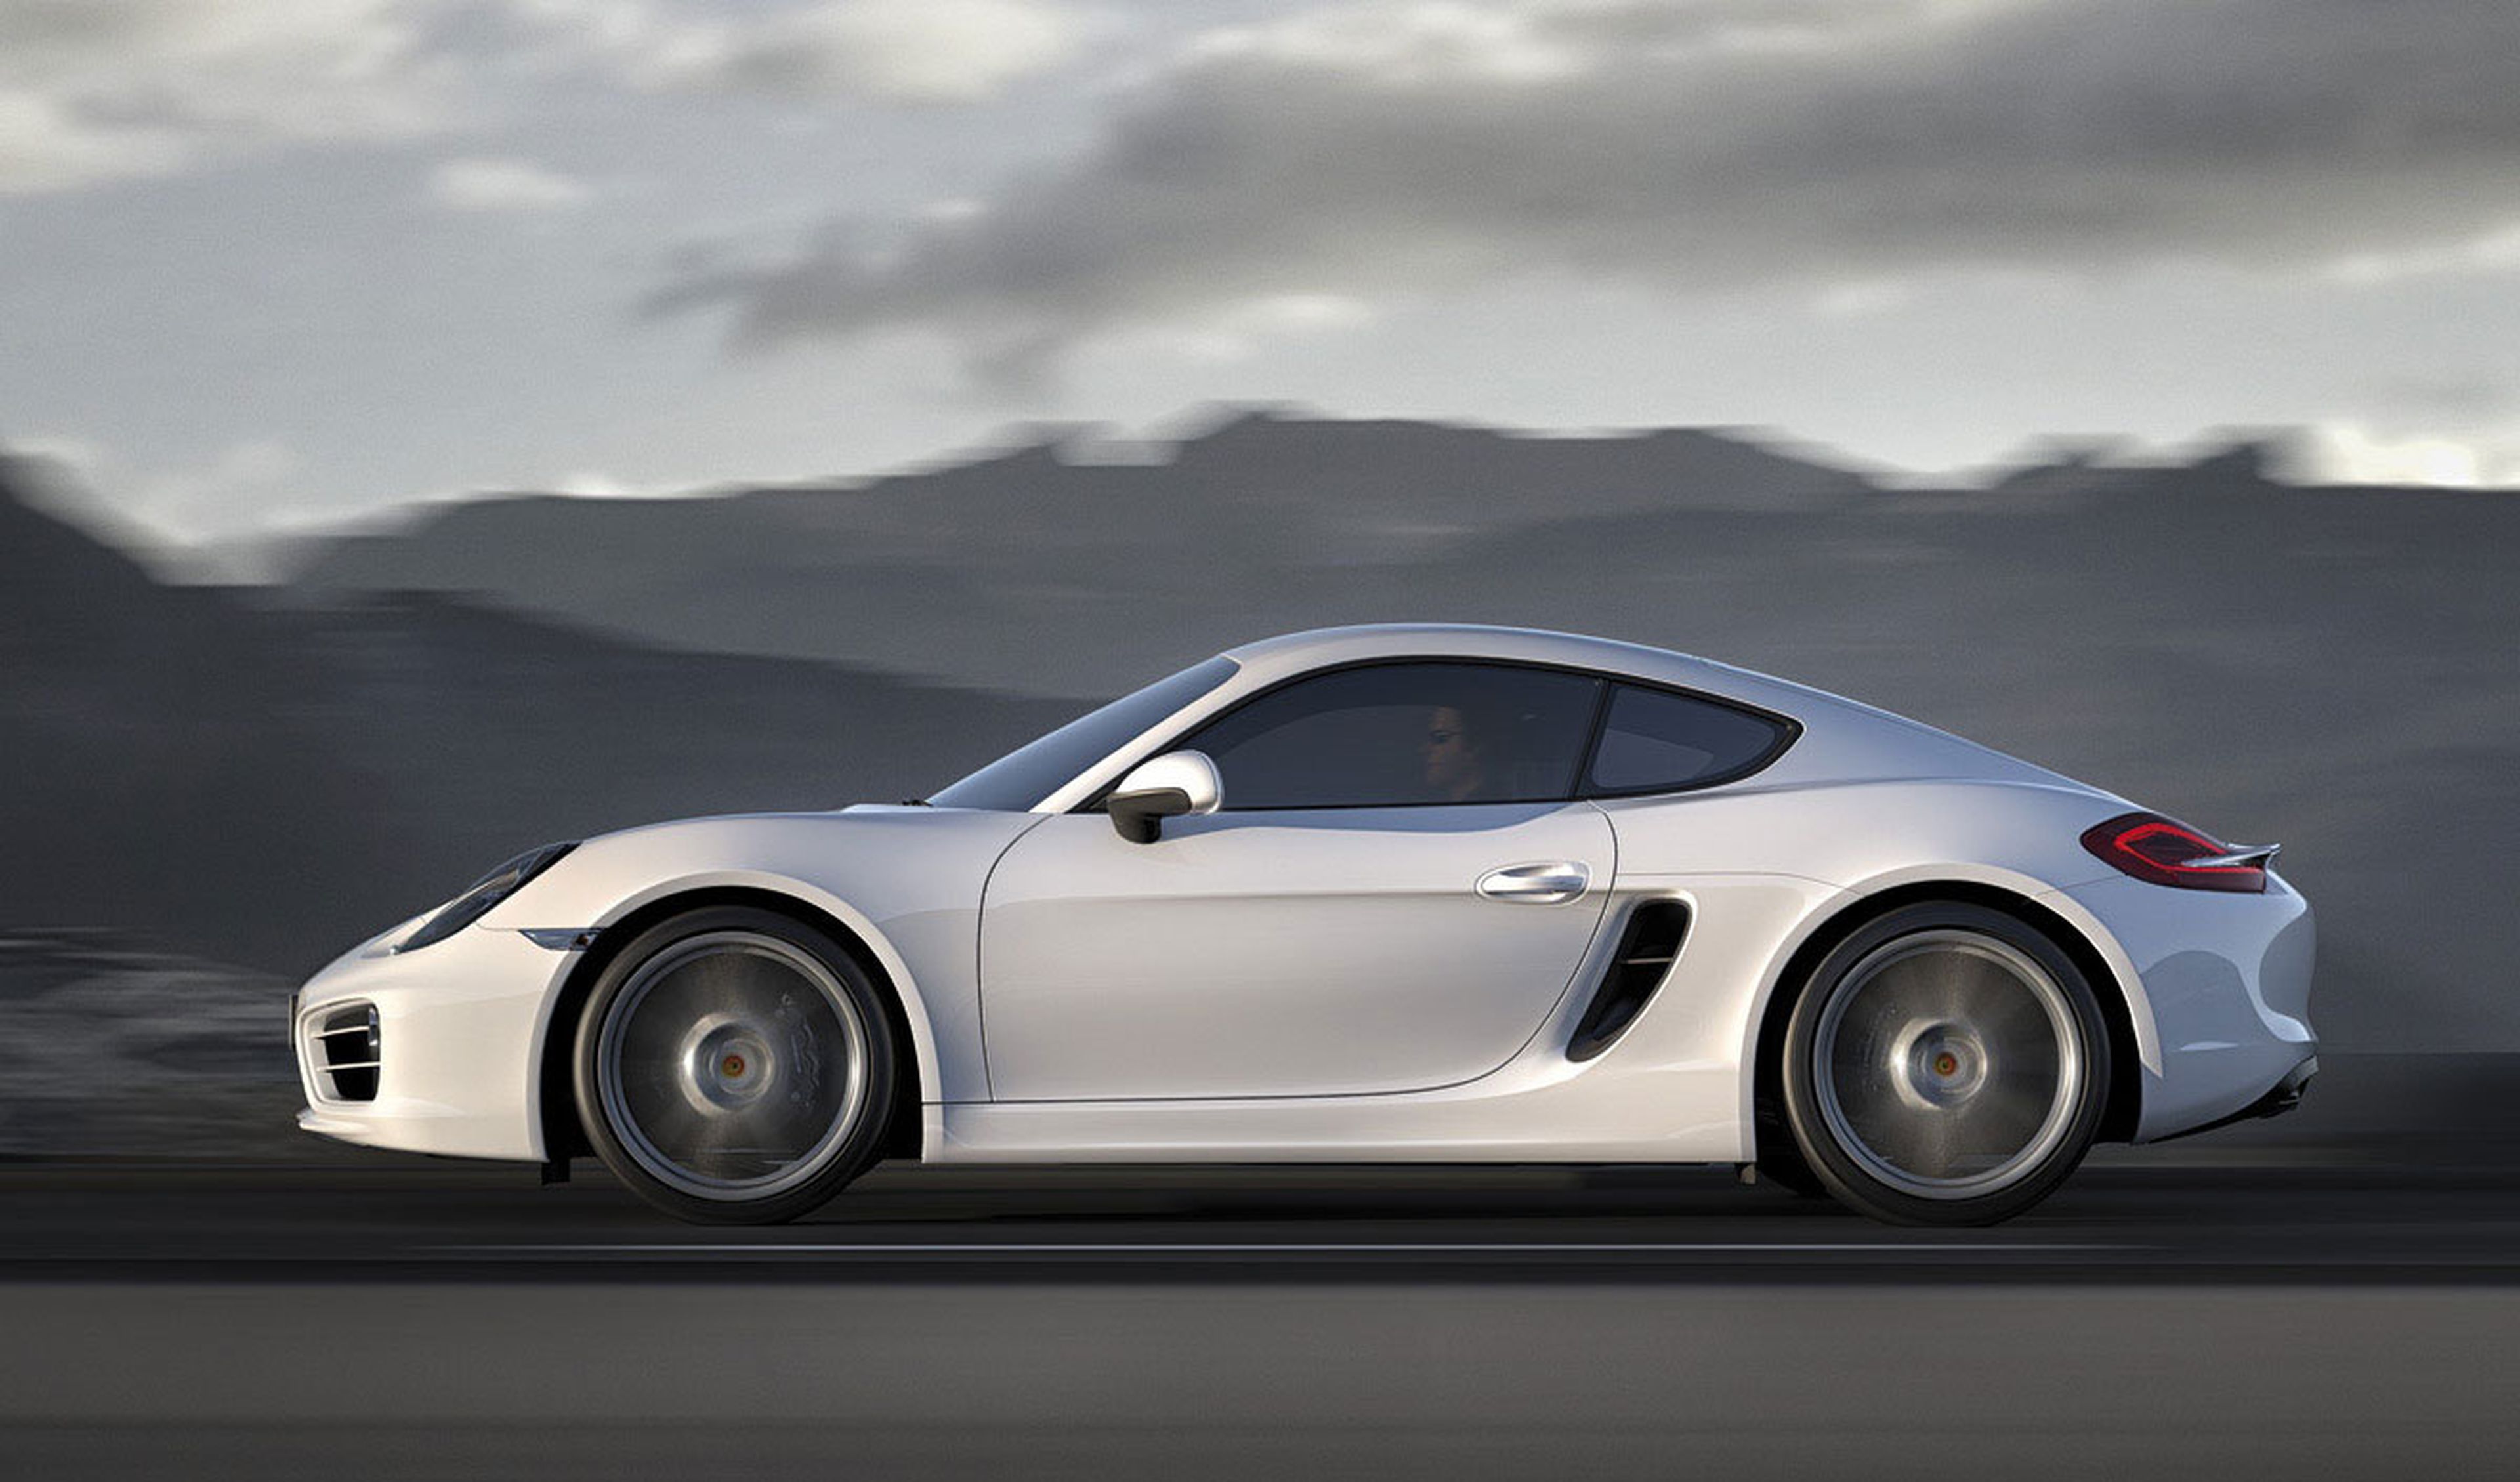 La familia Porsche crece con nuevos modelos y tecnologías